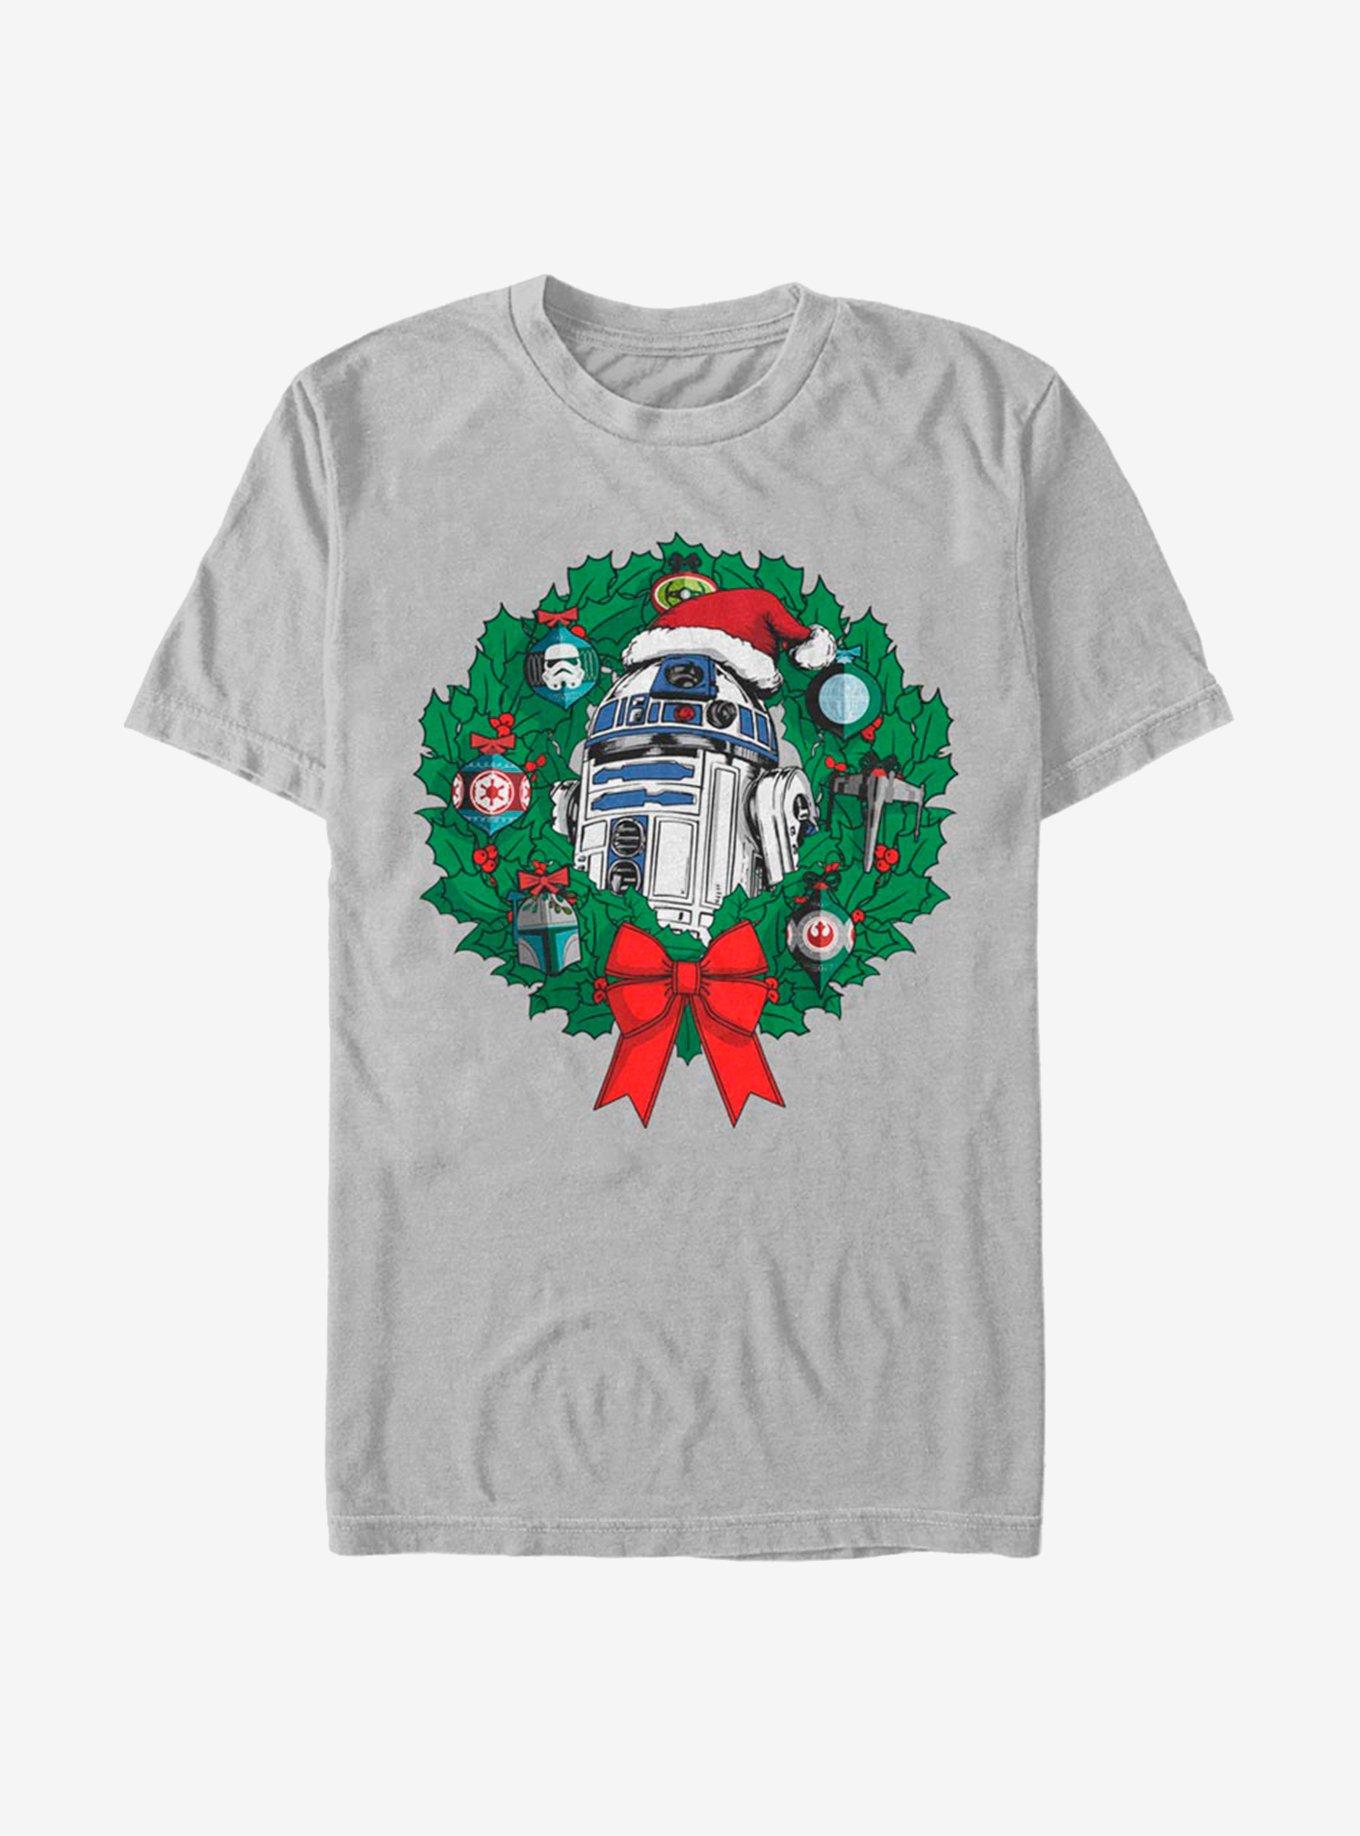 Star Wars Ornament Wreath T-Shirt